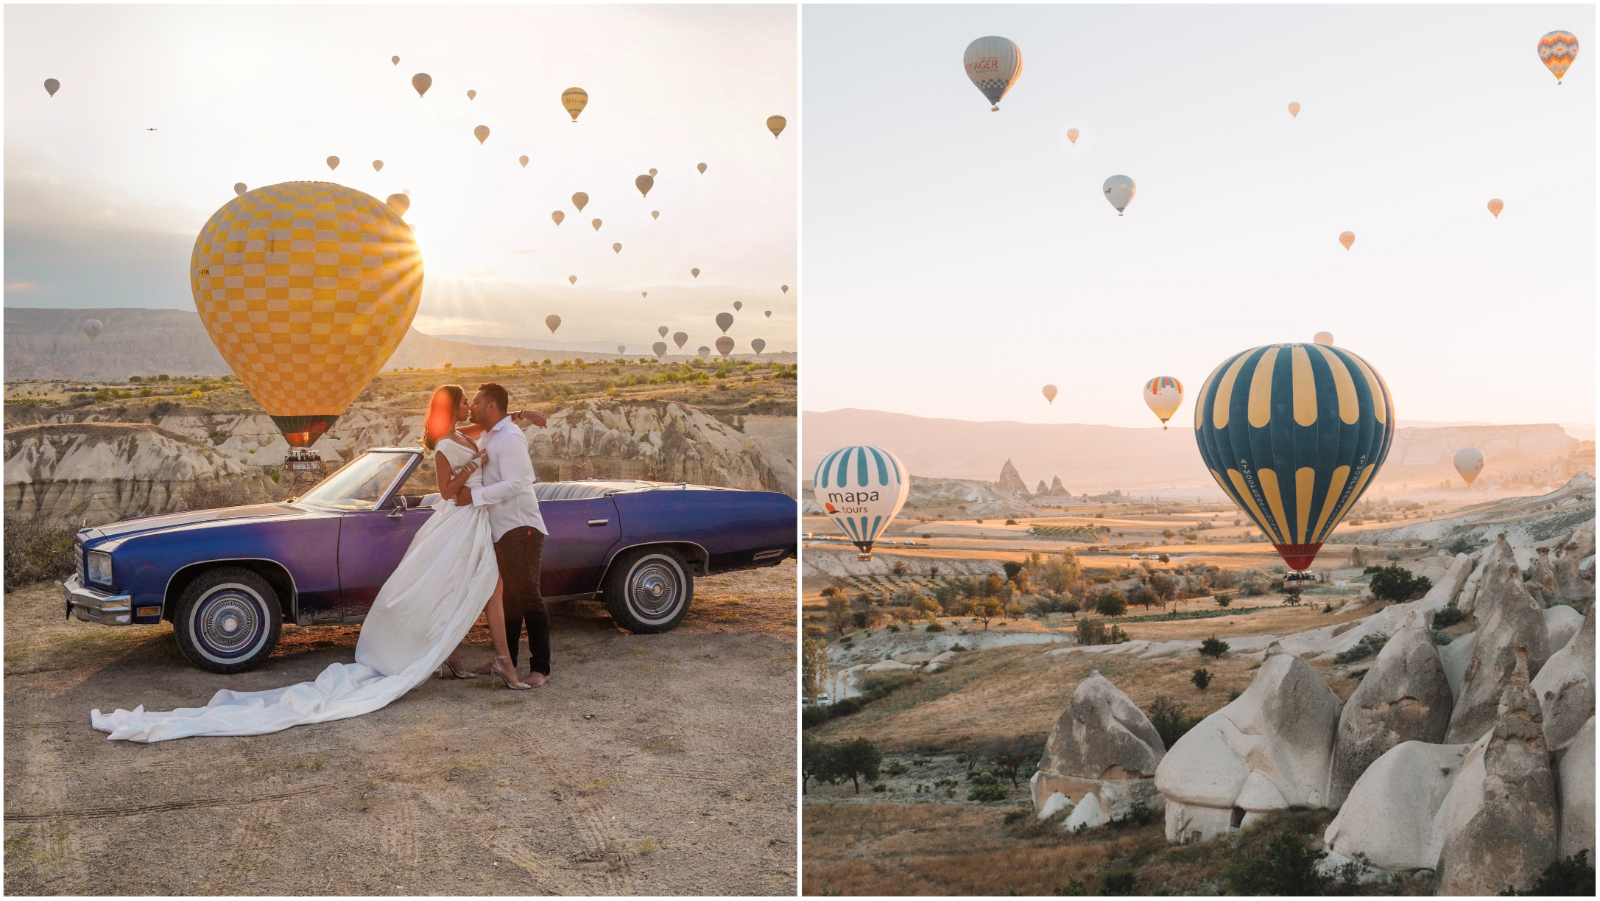 I Hrvatska je na popisu: Najljepše destinacije za let balonom